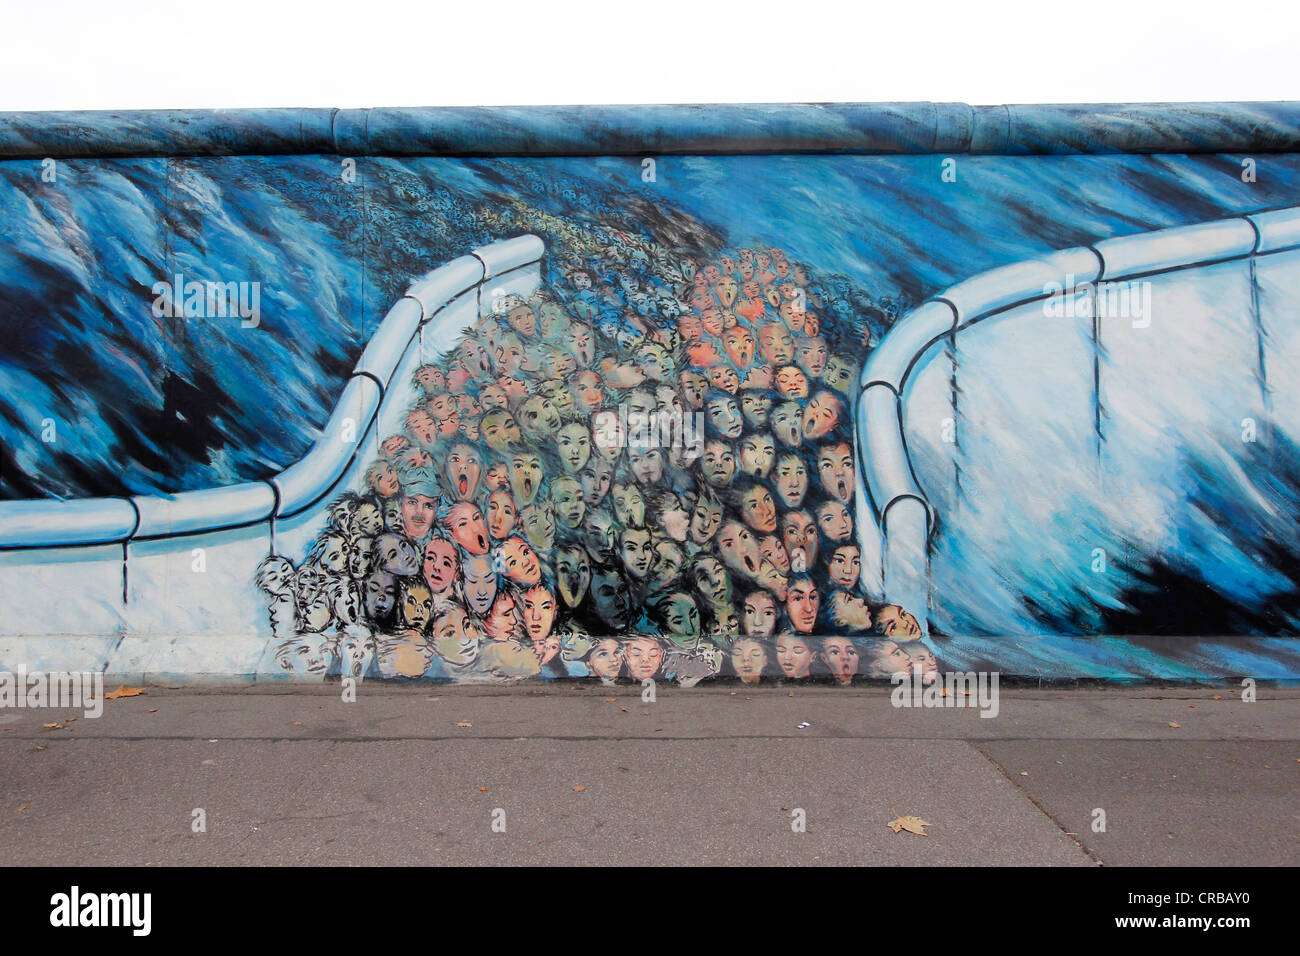 East Side Gallery, Berlin Wall art, Berlin, Germany, Europe Stock Photo